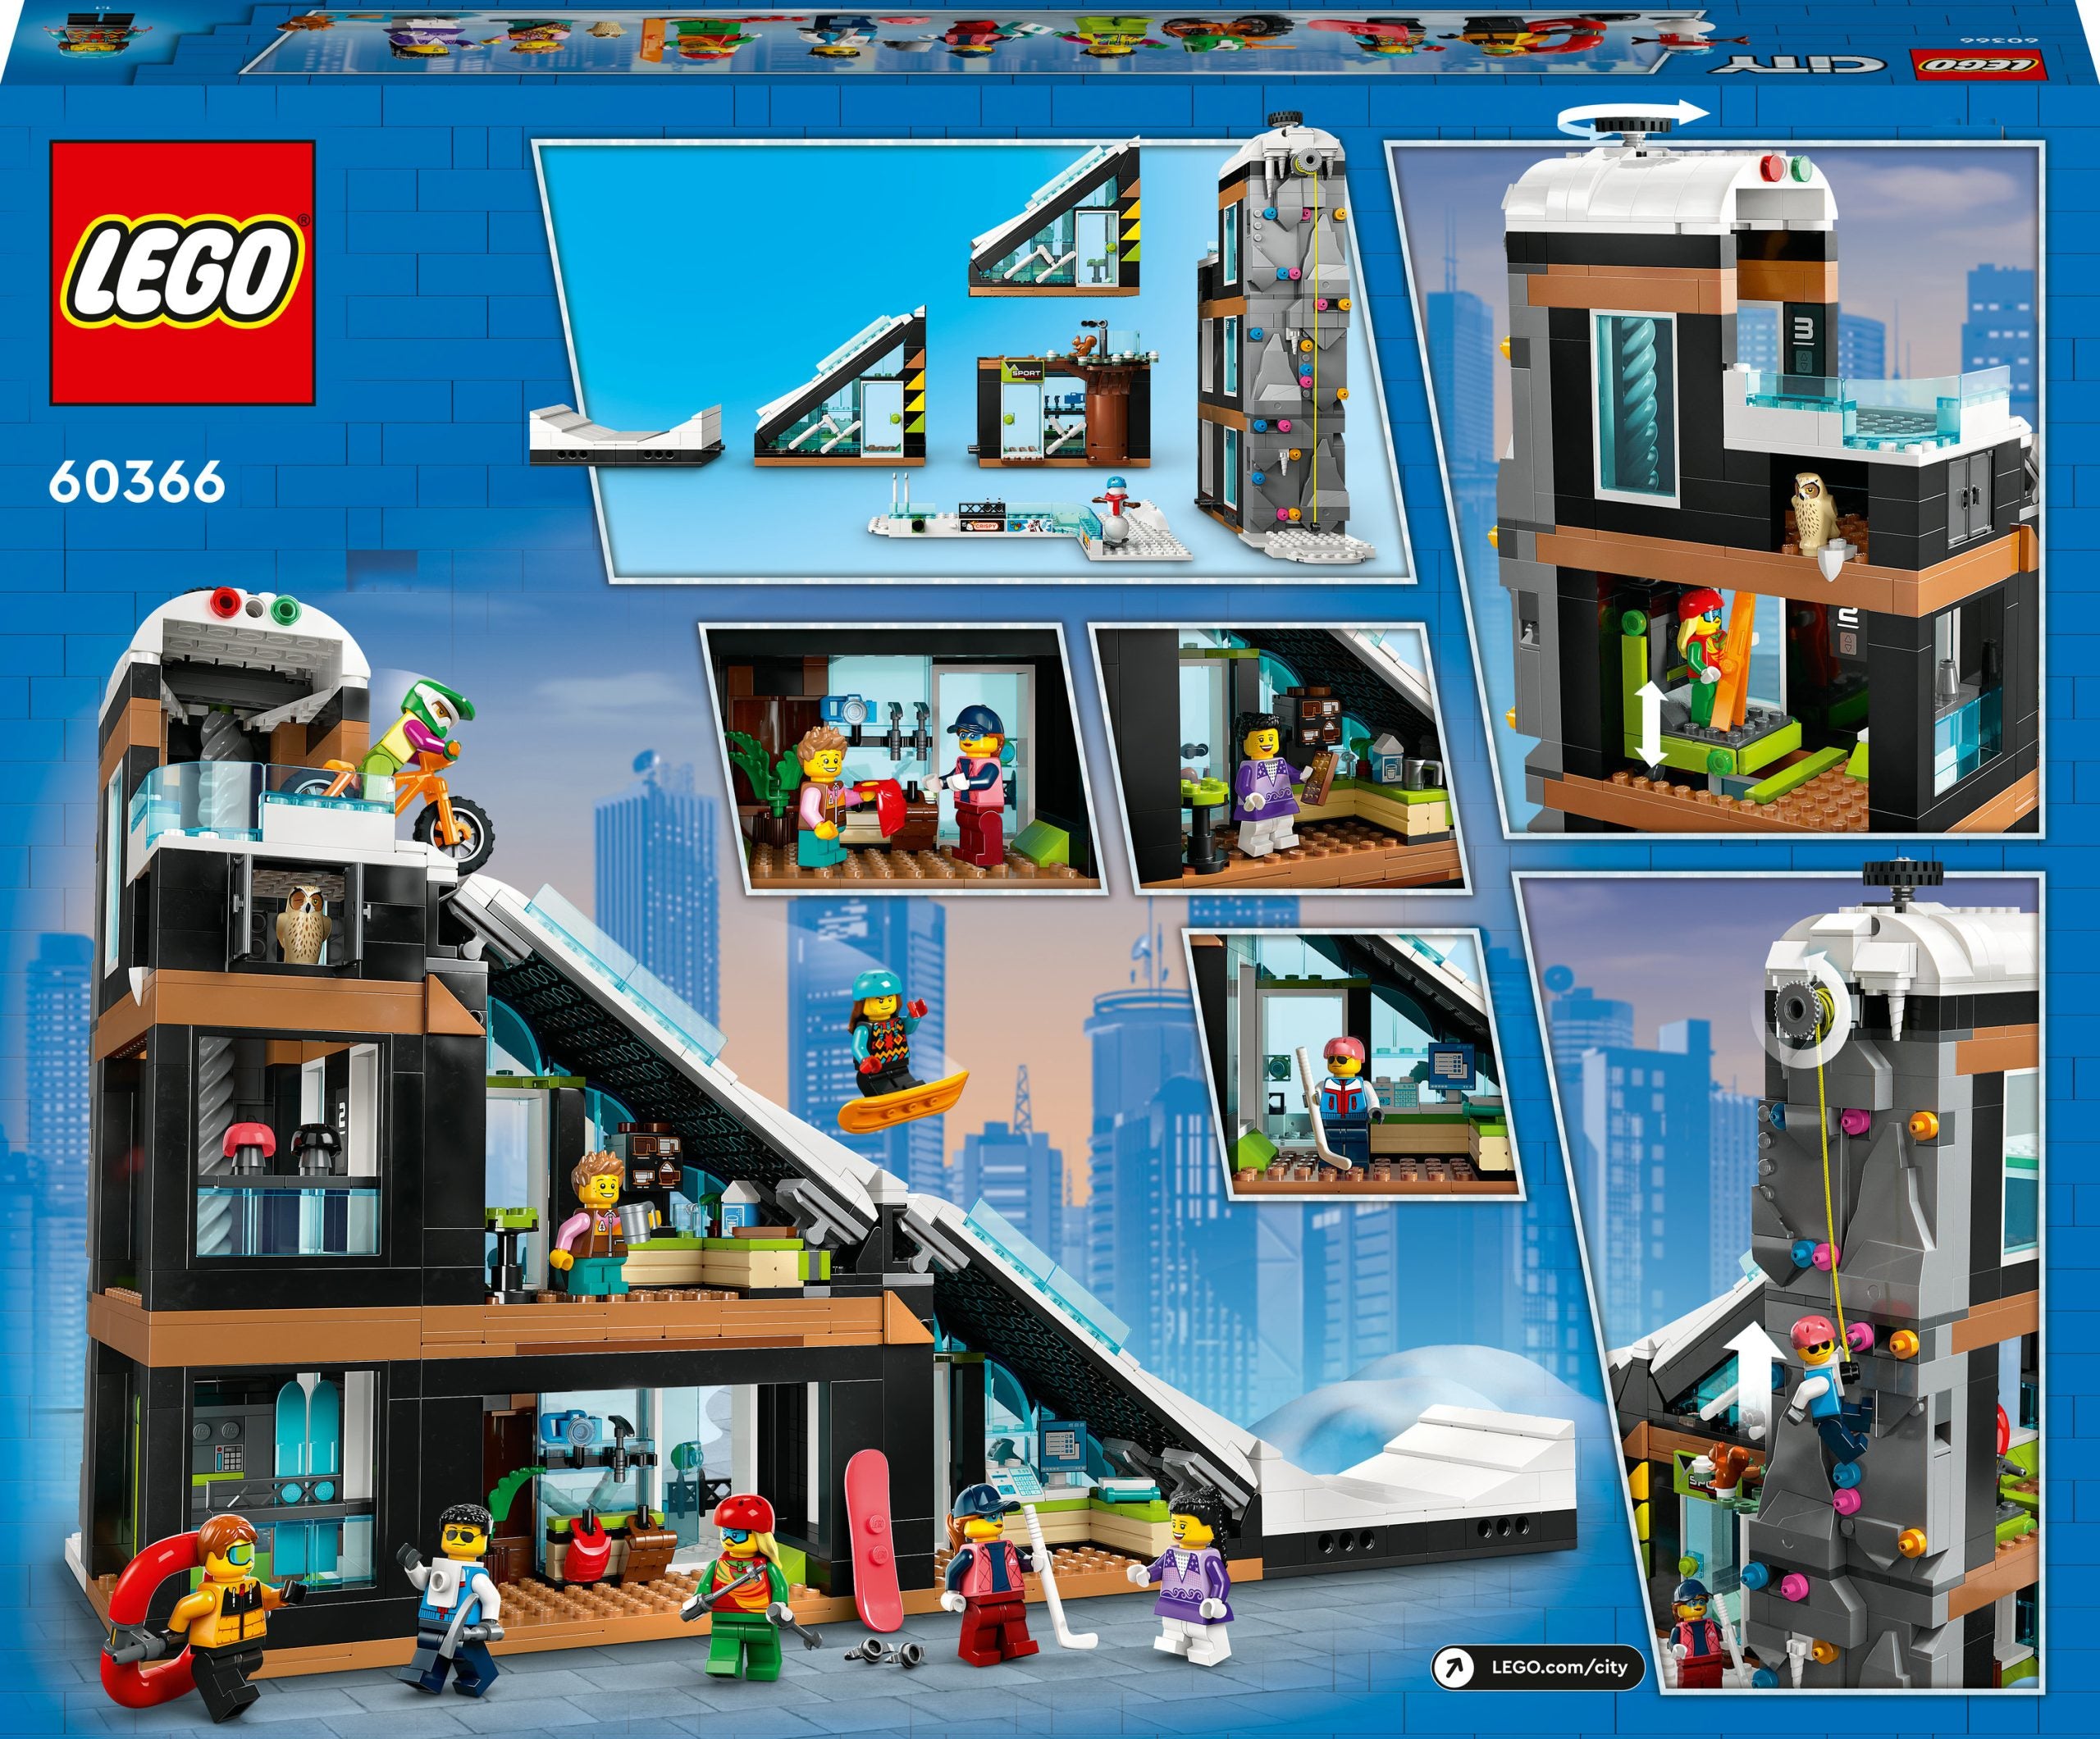 60366 - LEGO My City - Centro sci e arrampicata